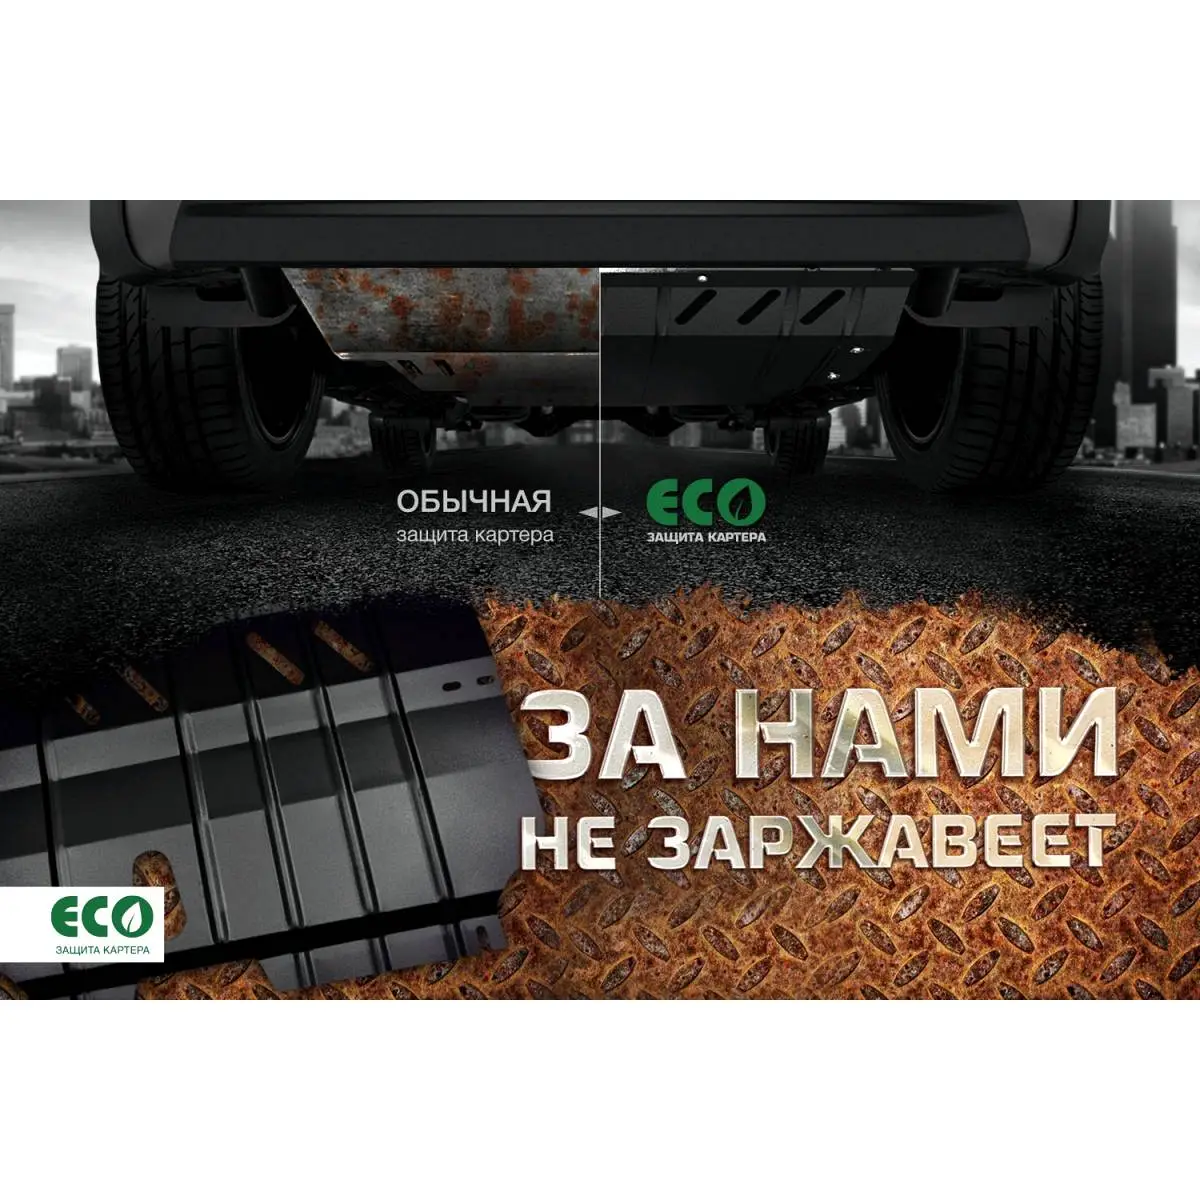 Комплект крепежа защиты картера Eco eco3638022 5JUL29 TV YZRVW 1437099137 изображение 5